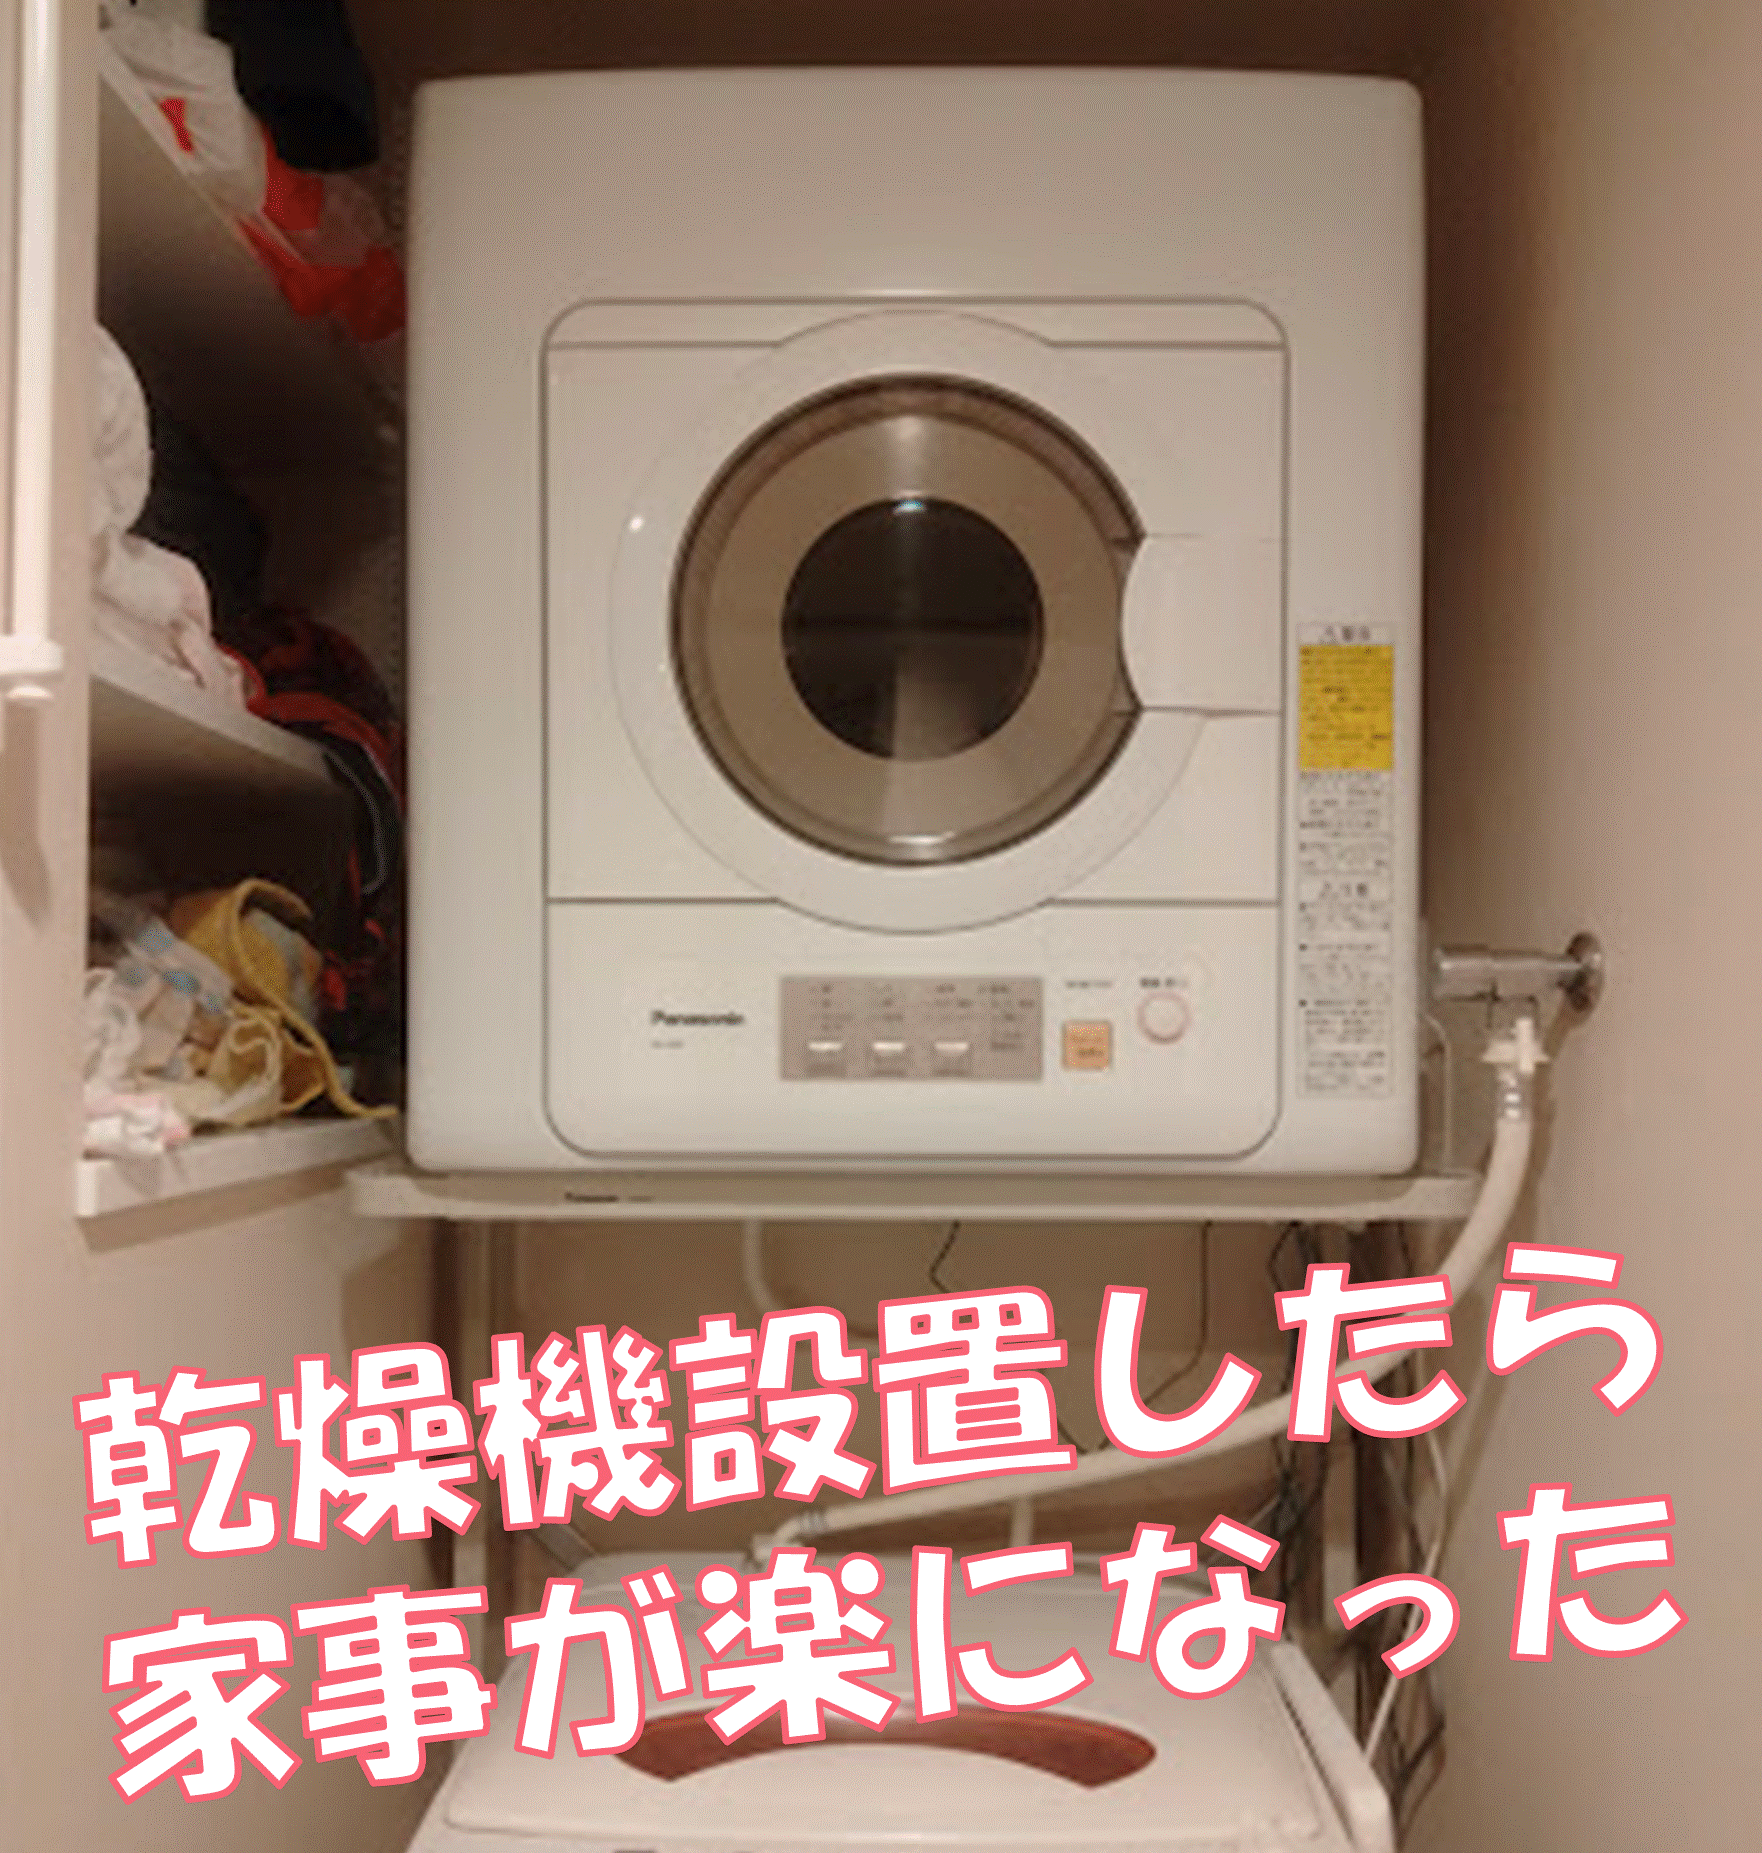 パナソニック 衣類乾燥機用 自立スタンドPanasonic N-UF11-S - 衣類乾燥機